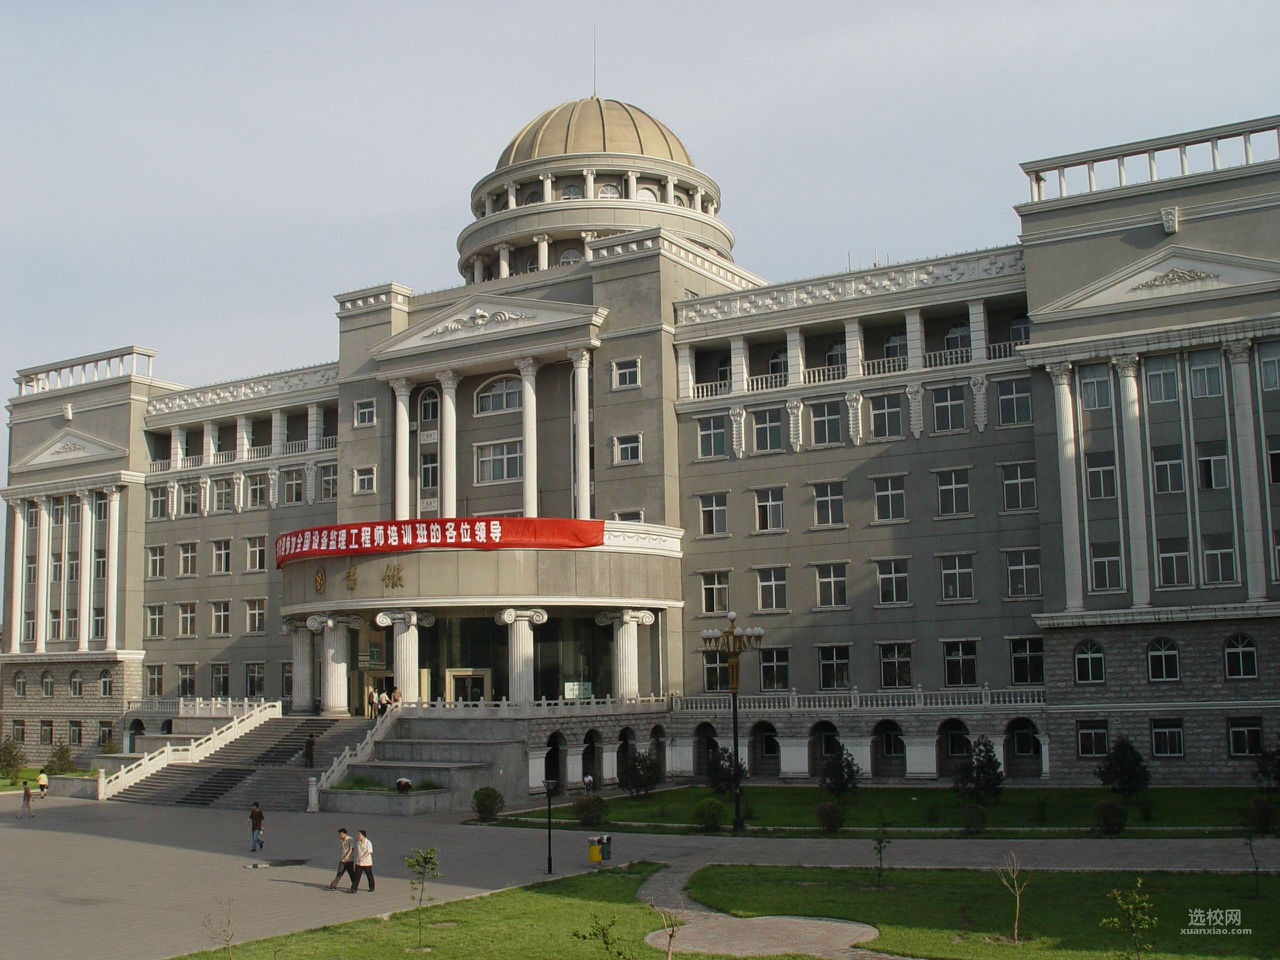 太原科技大学图书馆(原太原重型机械学院图书馆)建立于1952年,1965年